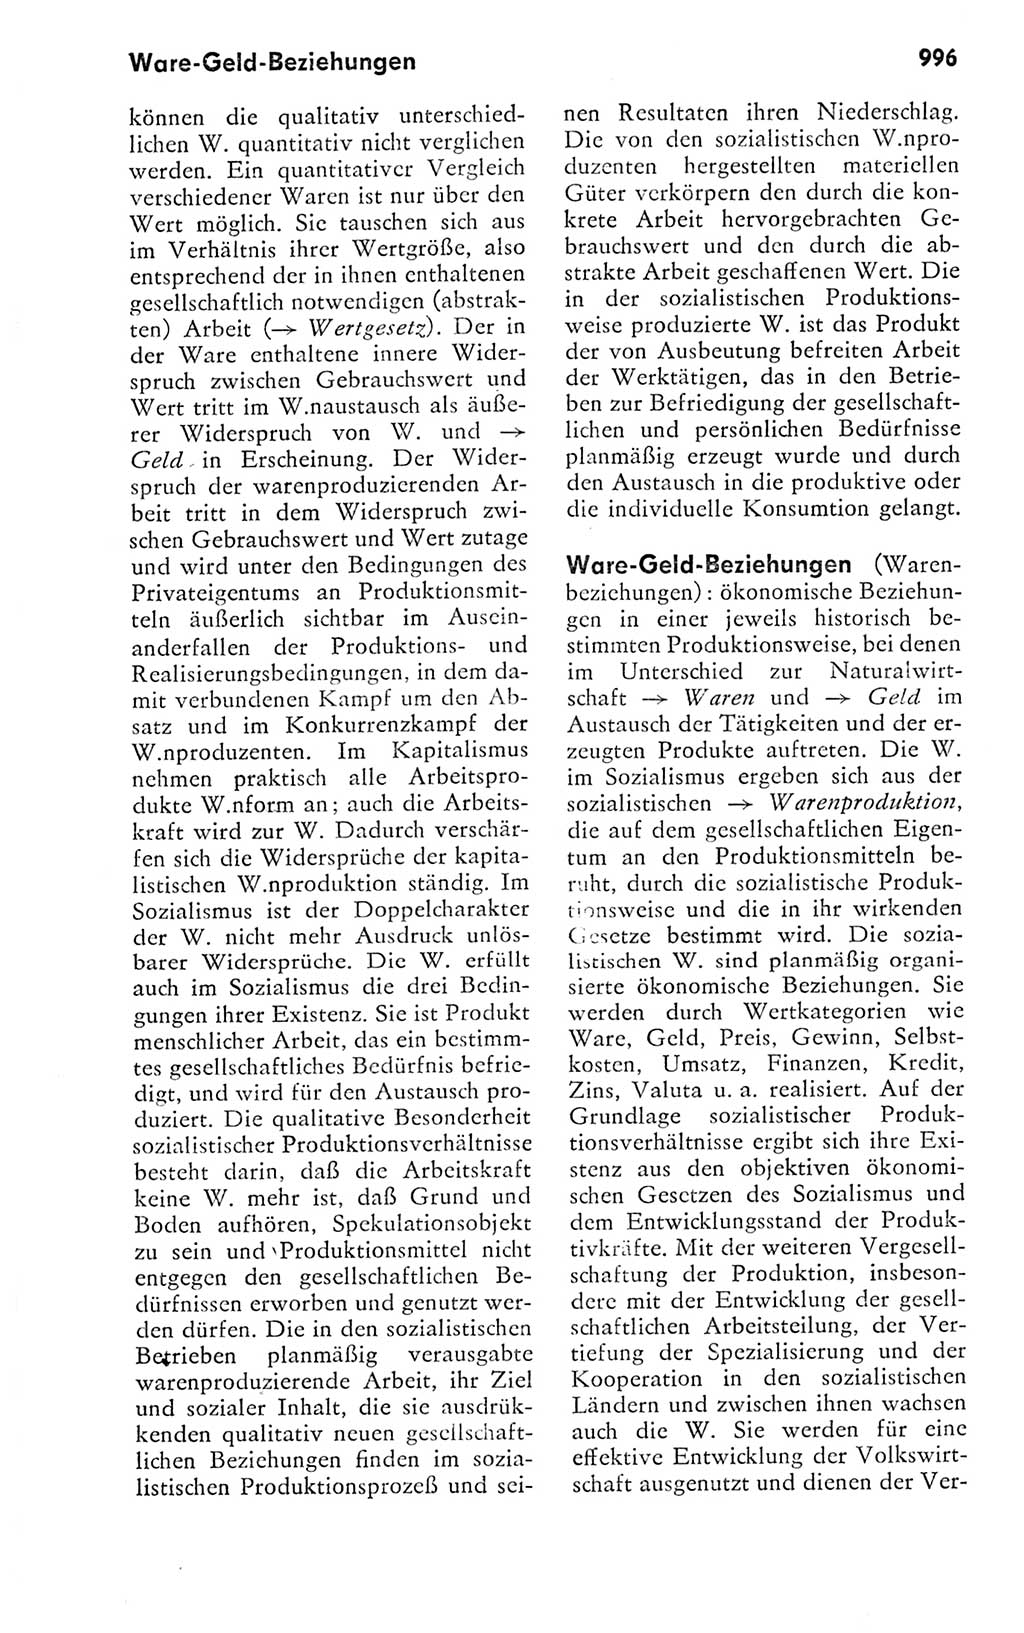 Kleines politisches Wörterbuch [Deutsche Demokratische Republik (DDR)] 1978, Seite 996 (Kl. pol. Wb. DDR 1978, S. 996)